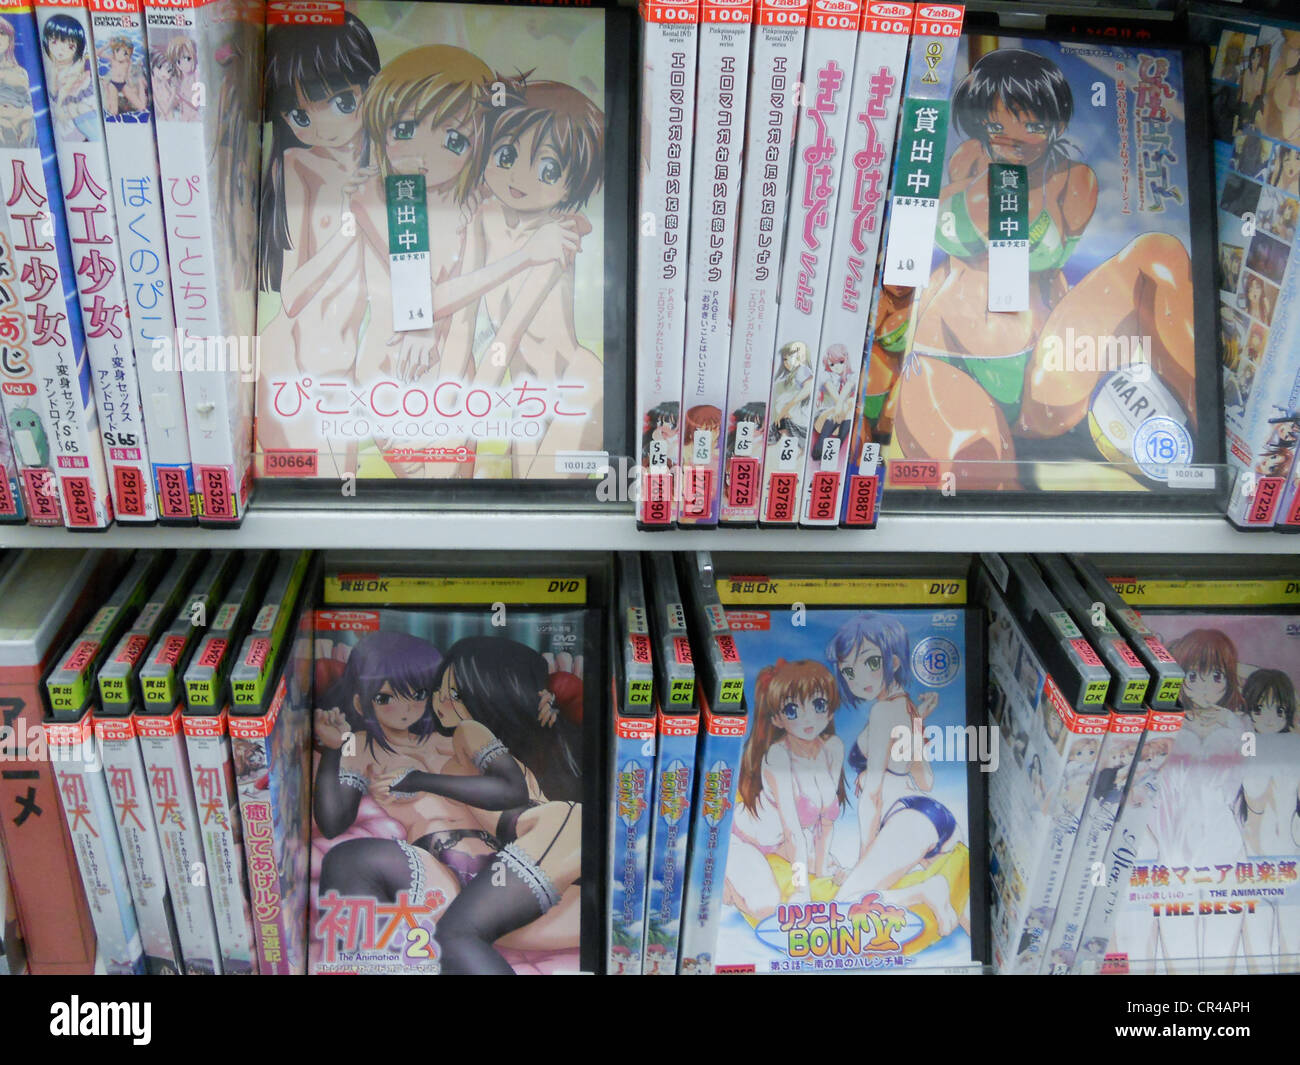 Watch Porn Image Japanische Anime Porno DVD in der Videothek in Japan ...